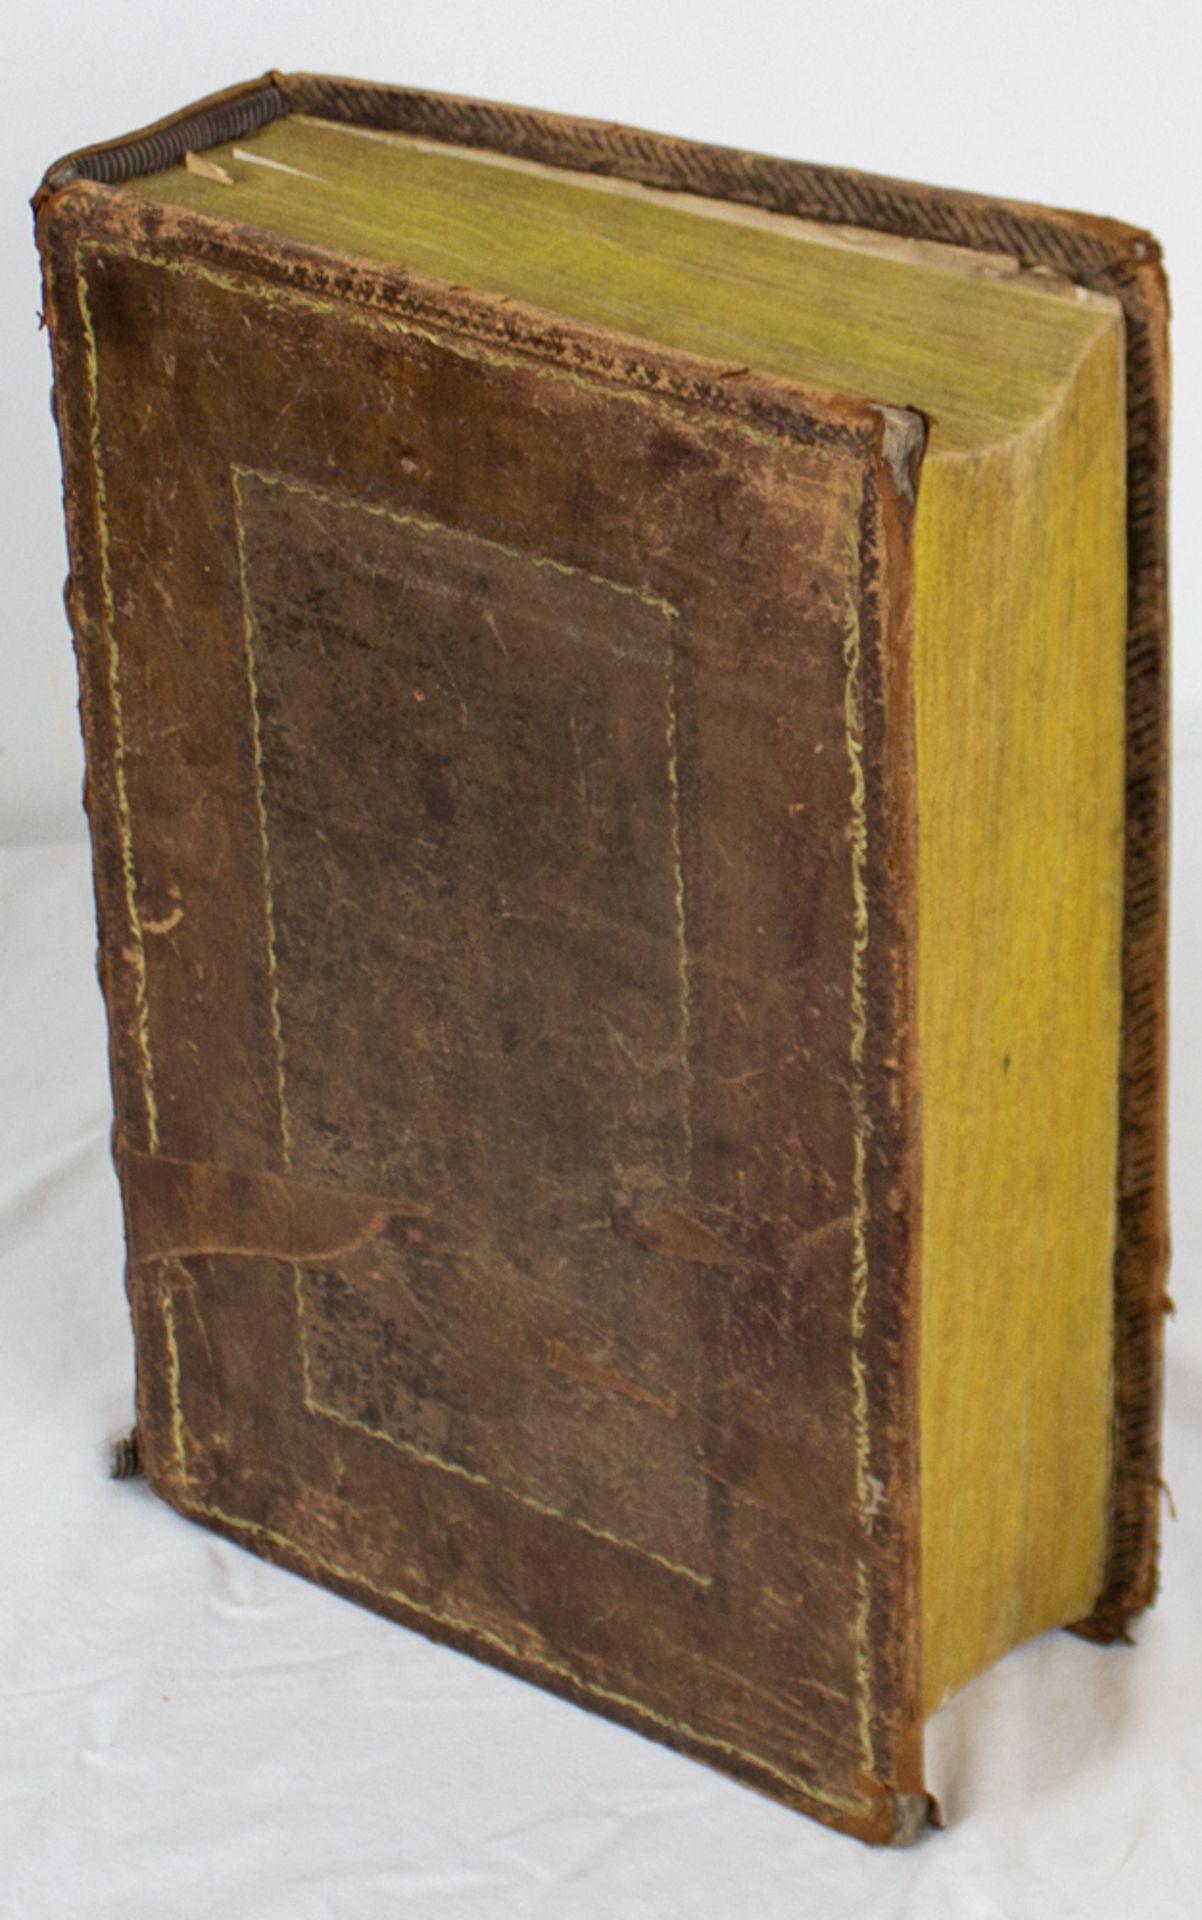 Weigand Bibel, Kolorierte Holzschnitte von Jost Amman, 16. Jh. - Bild 6 aus 20